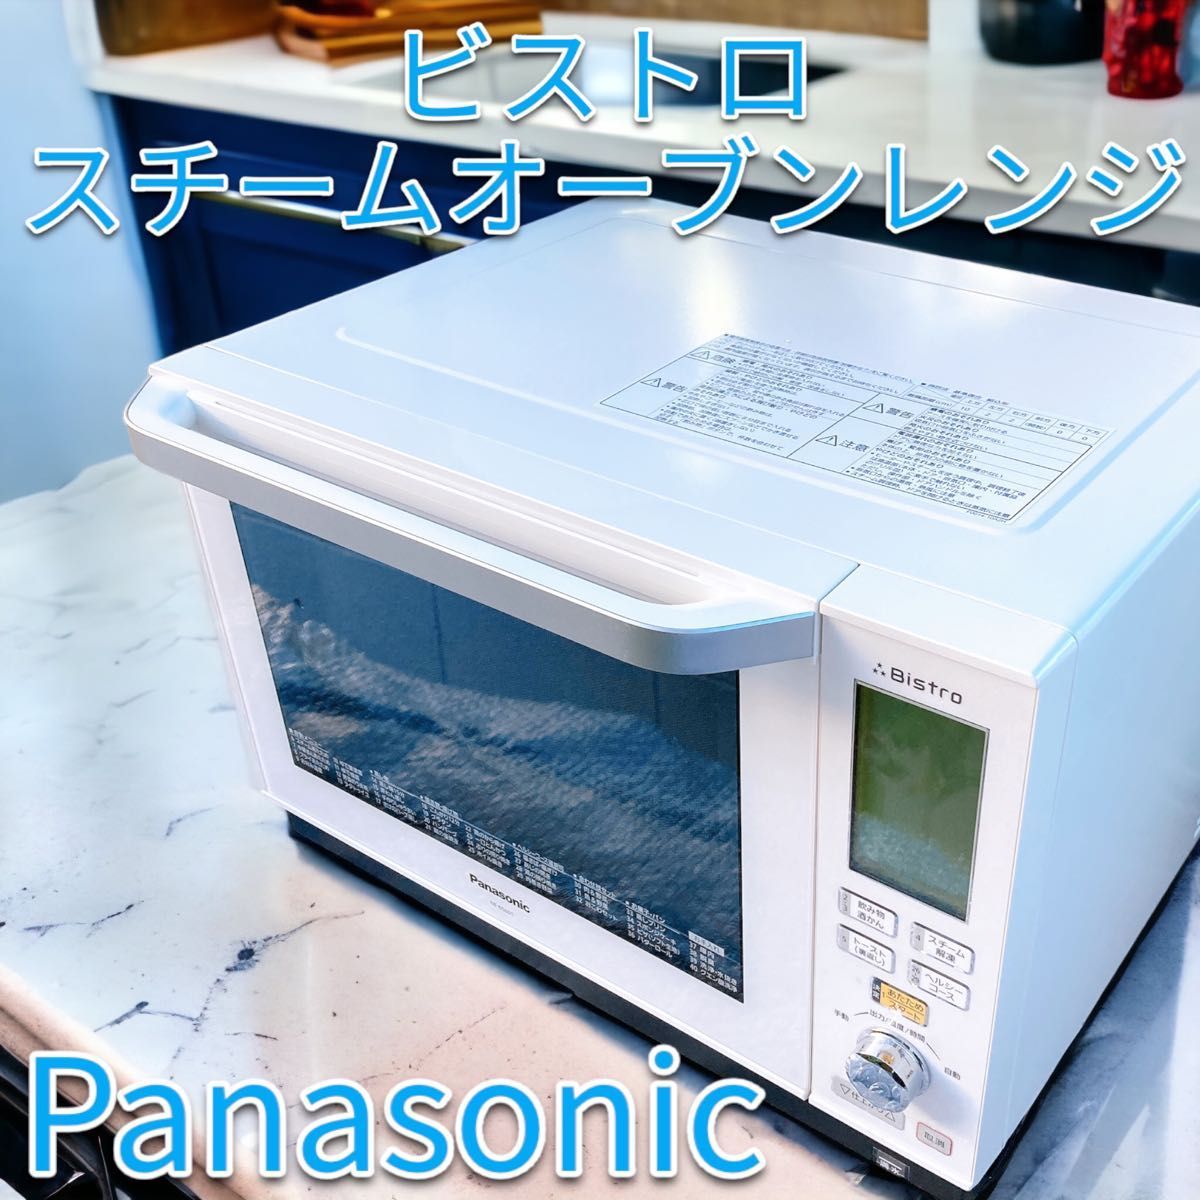 最愛 Panasonic スチームオーブンレンジ 3つ星 ビストロ 26L ホワイト